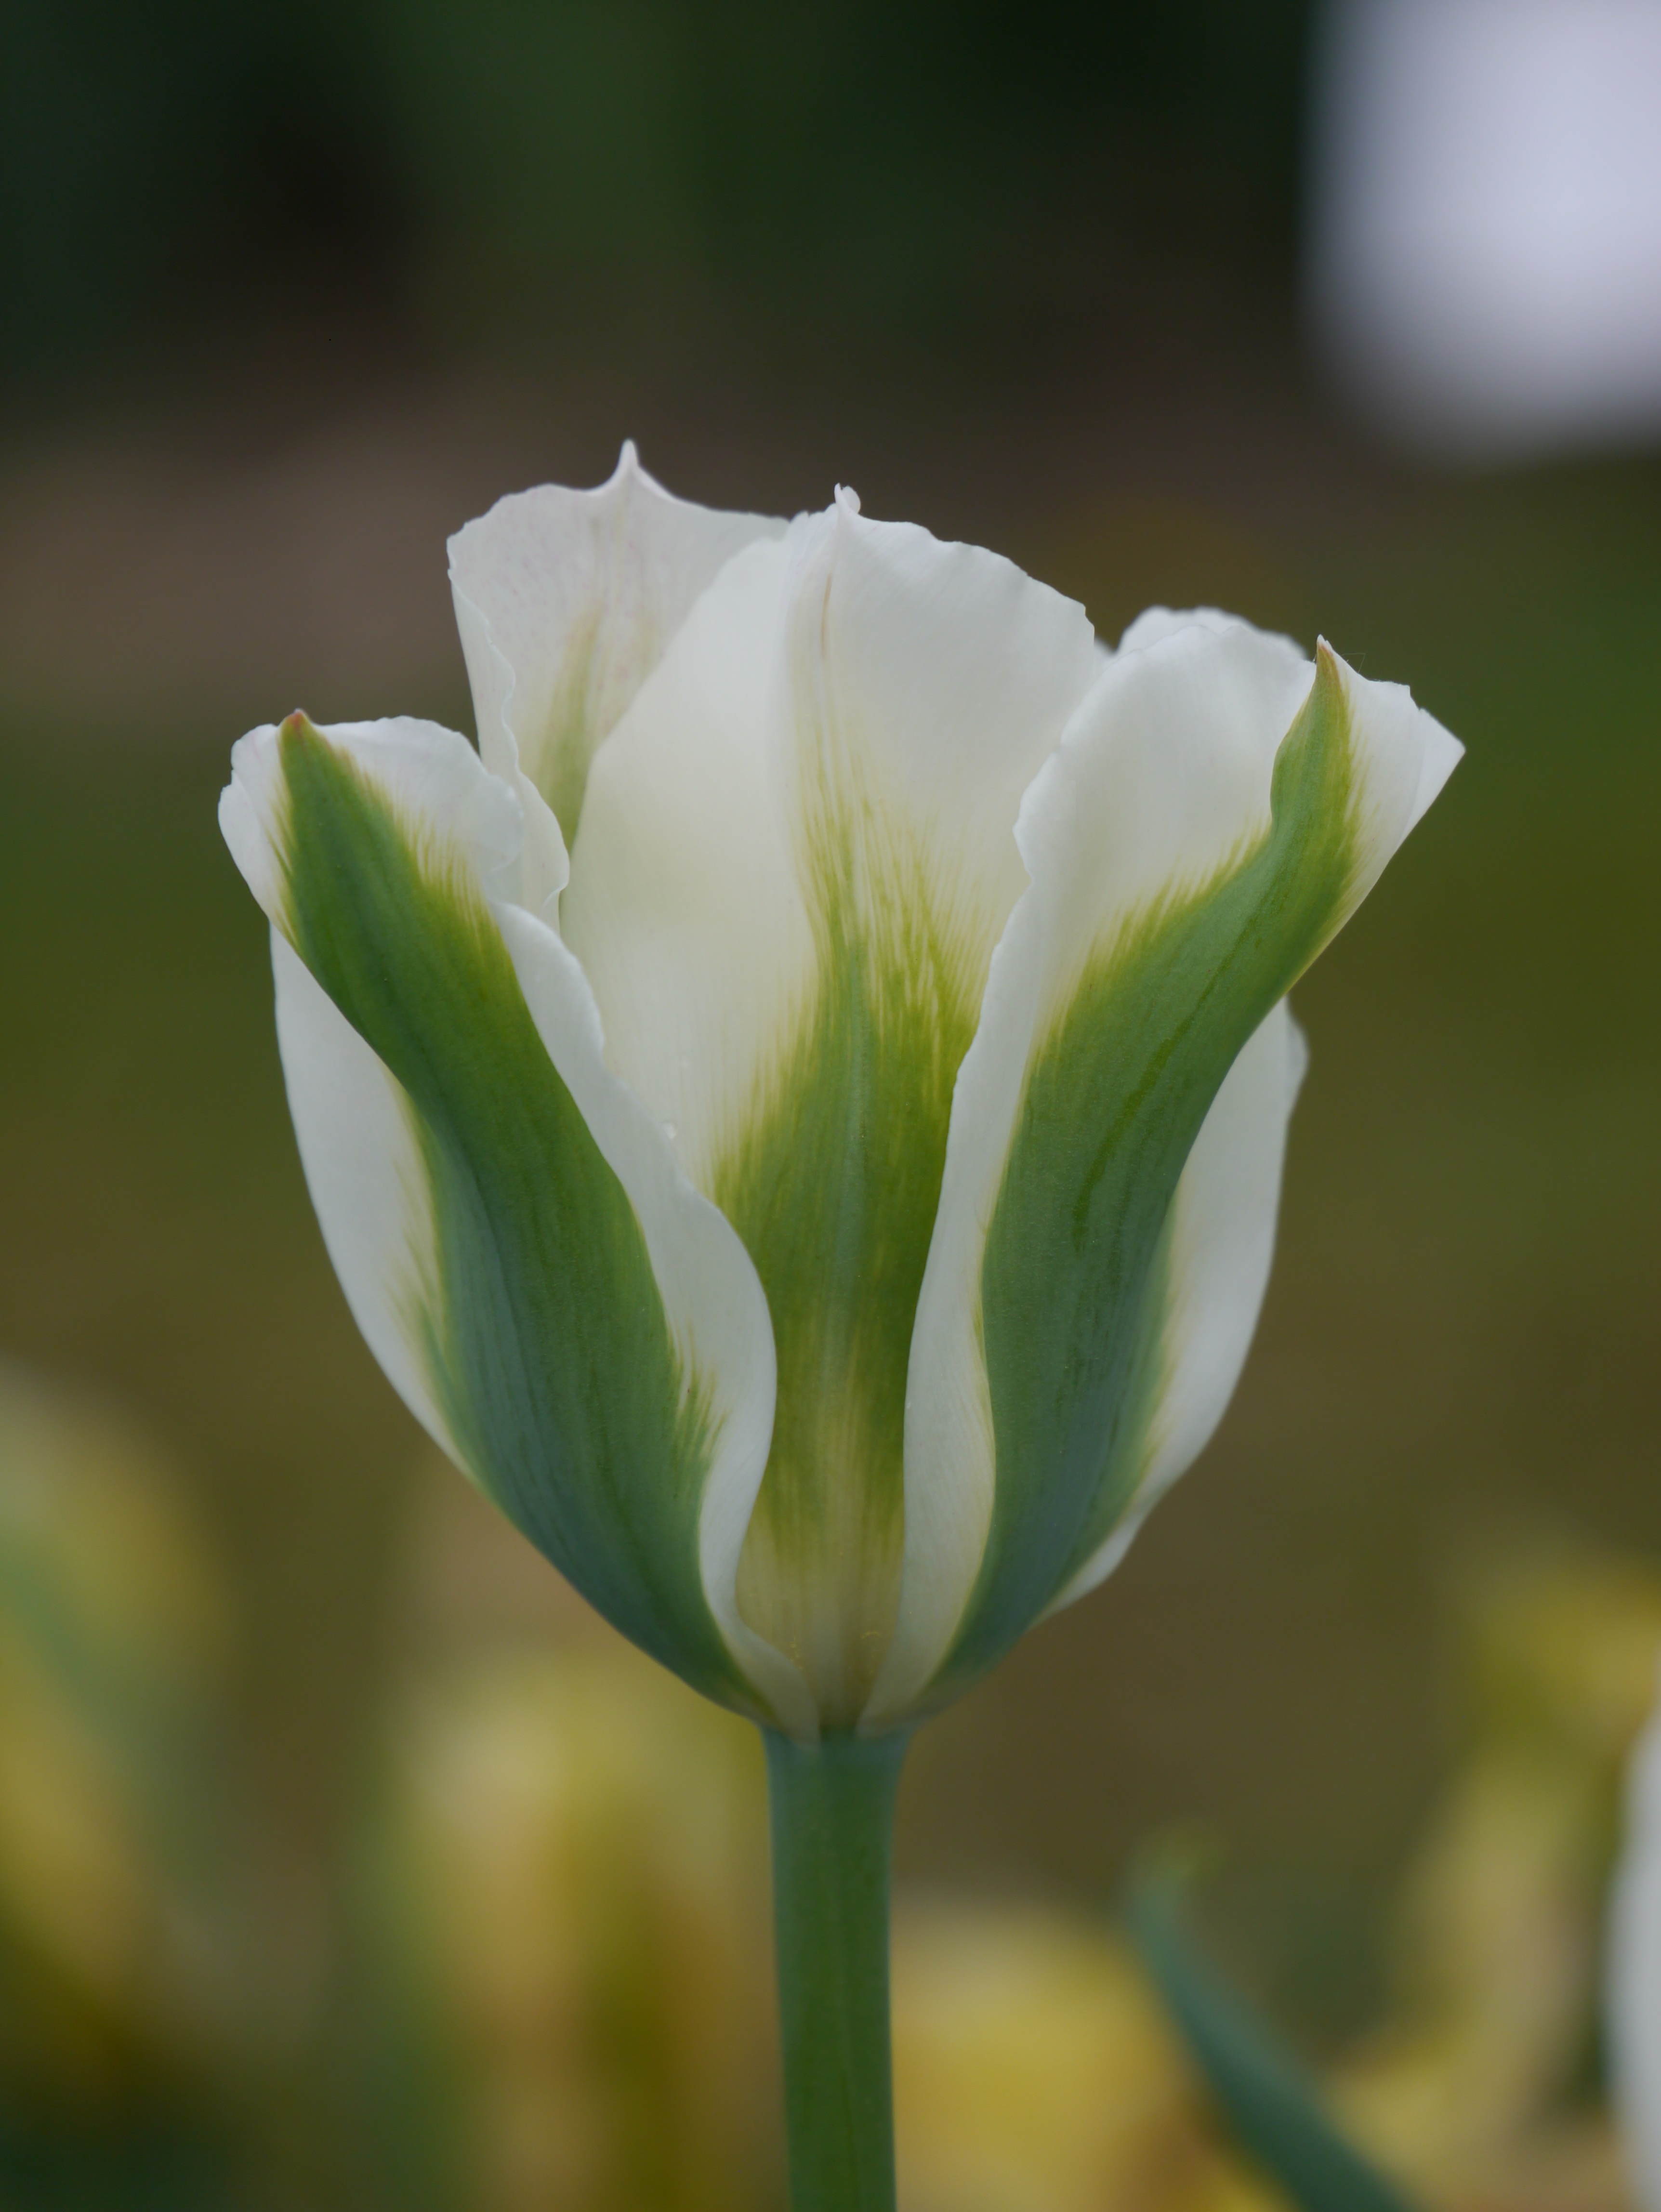 Viridiflora-Tulpen Spring Green